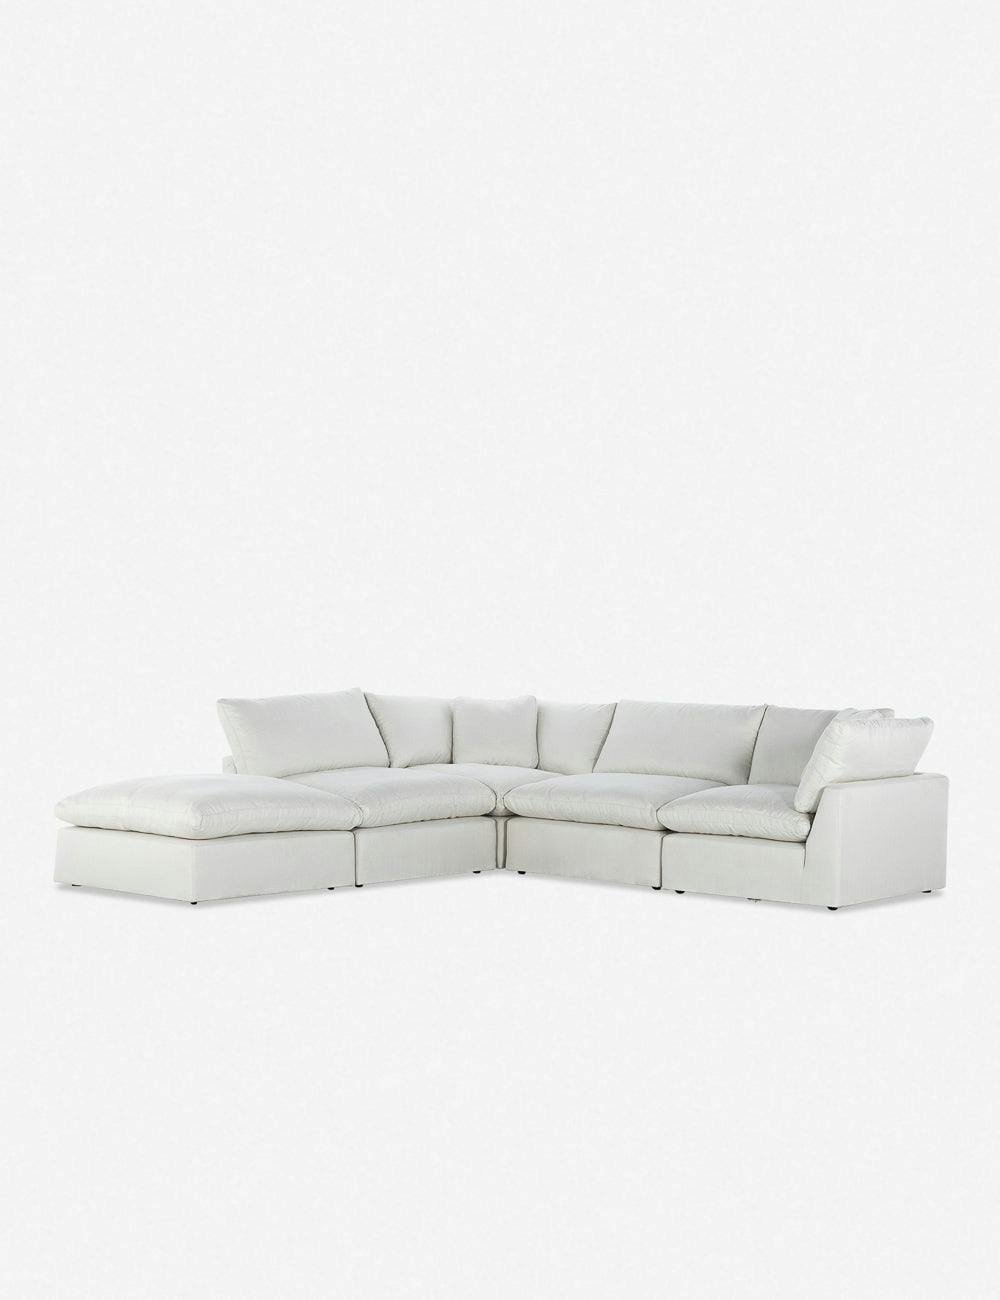 Bernard Modular 5-Piece Ivory Left-Facing Sectional Sofa with Ottoman